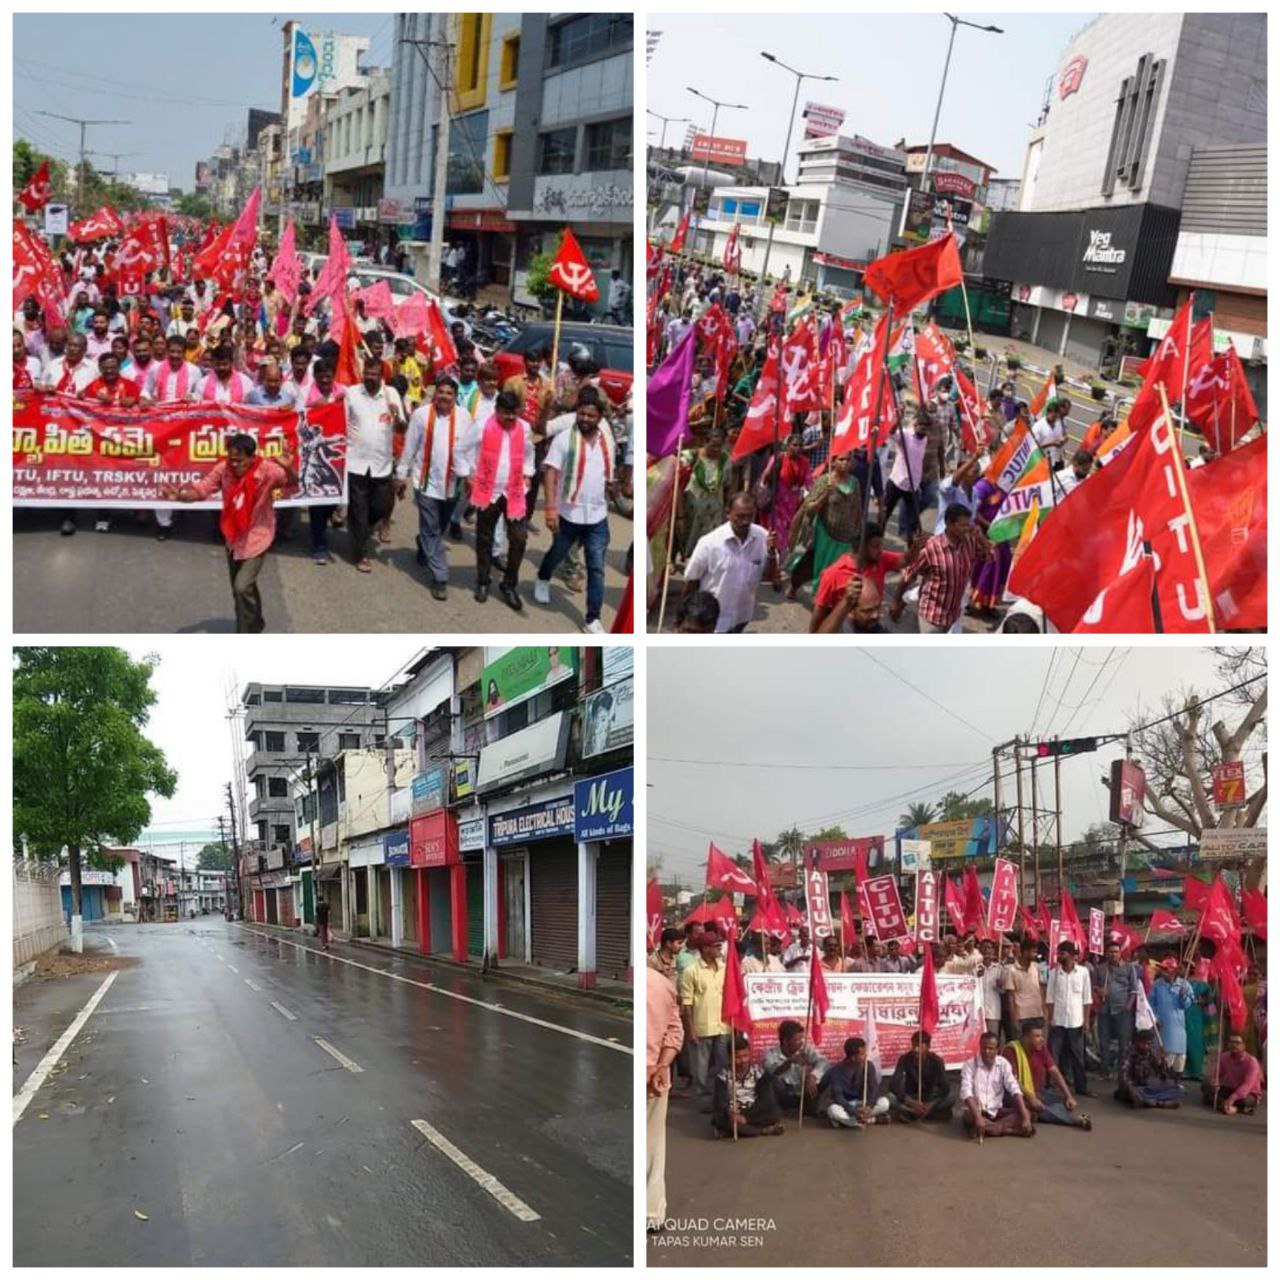 بزرگترین اعتصاب کارگری جهان در هندوستان